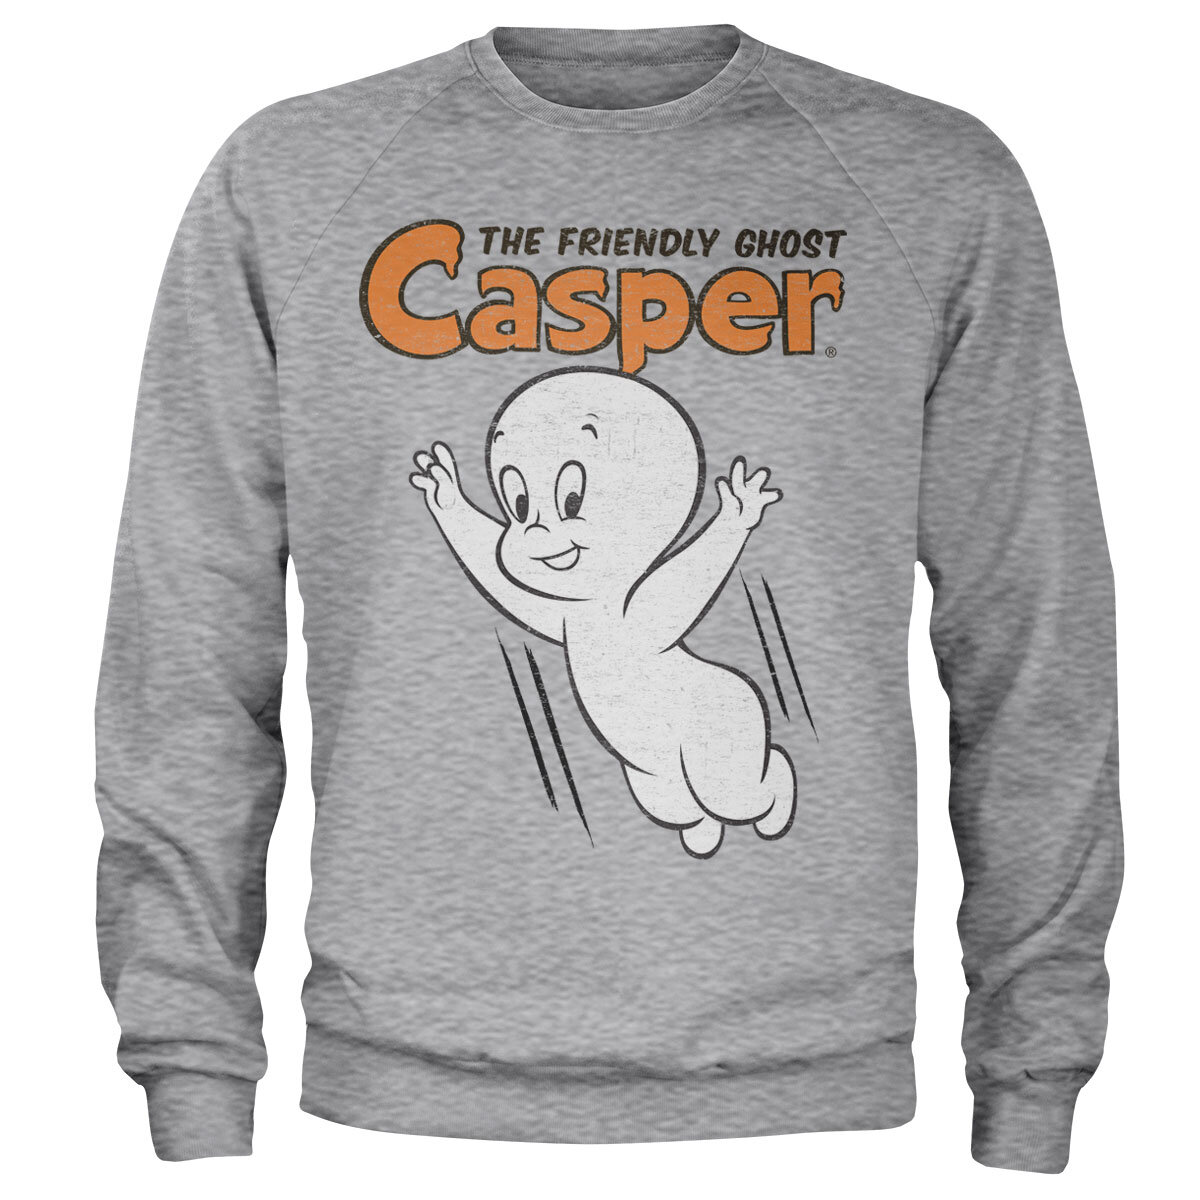 Casper - The Friendly Ghost Sweatshirt